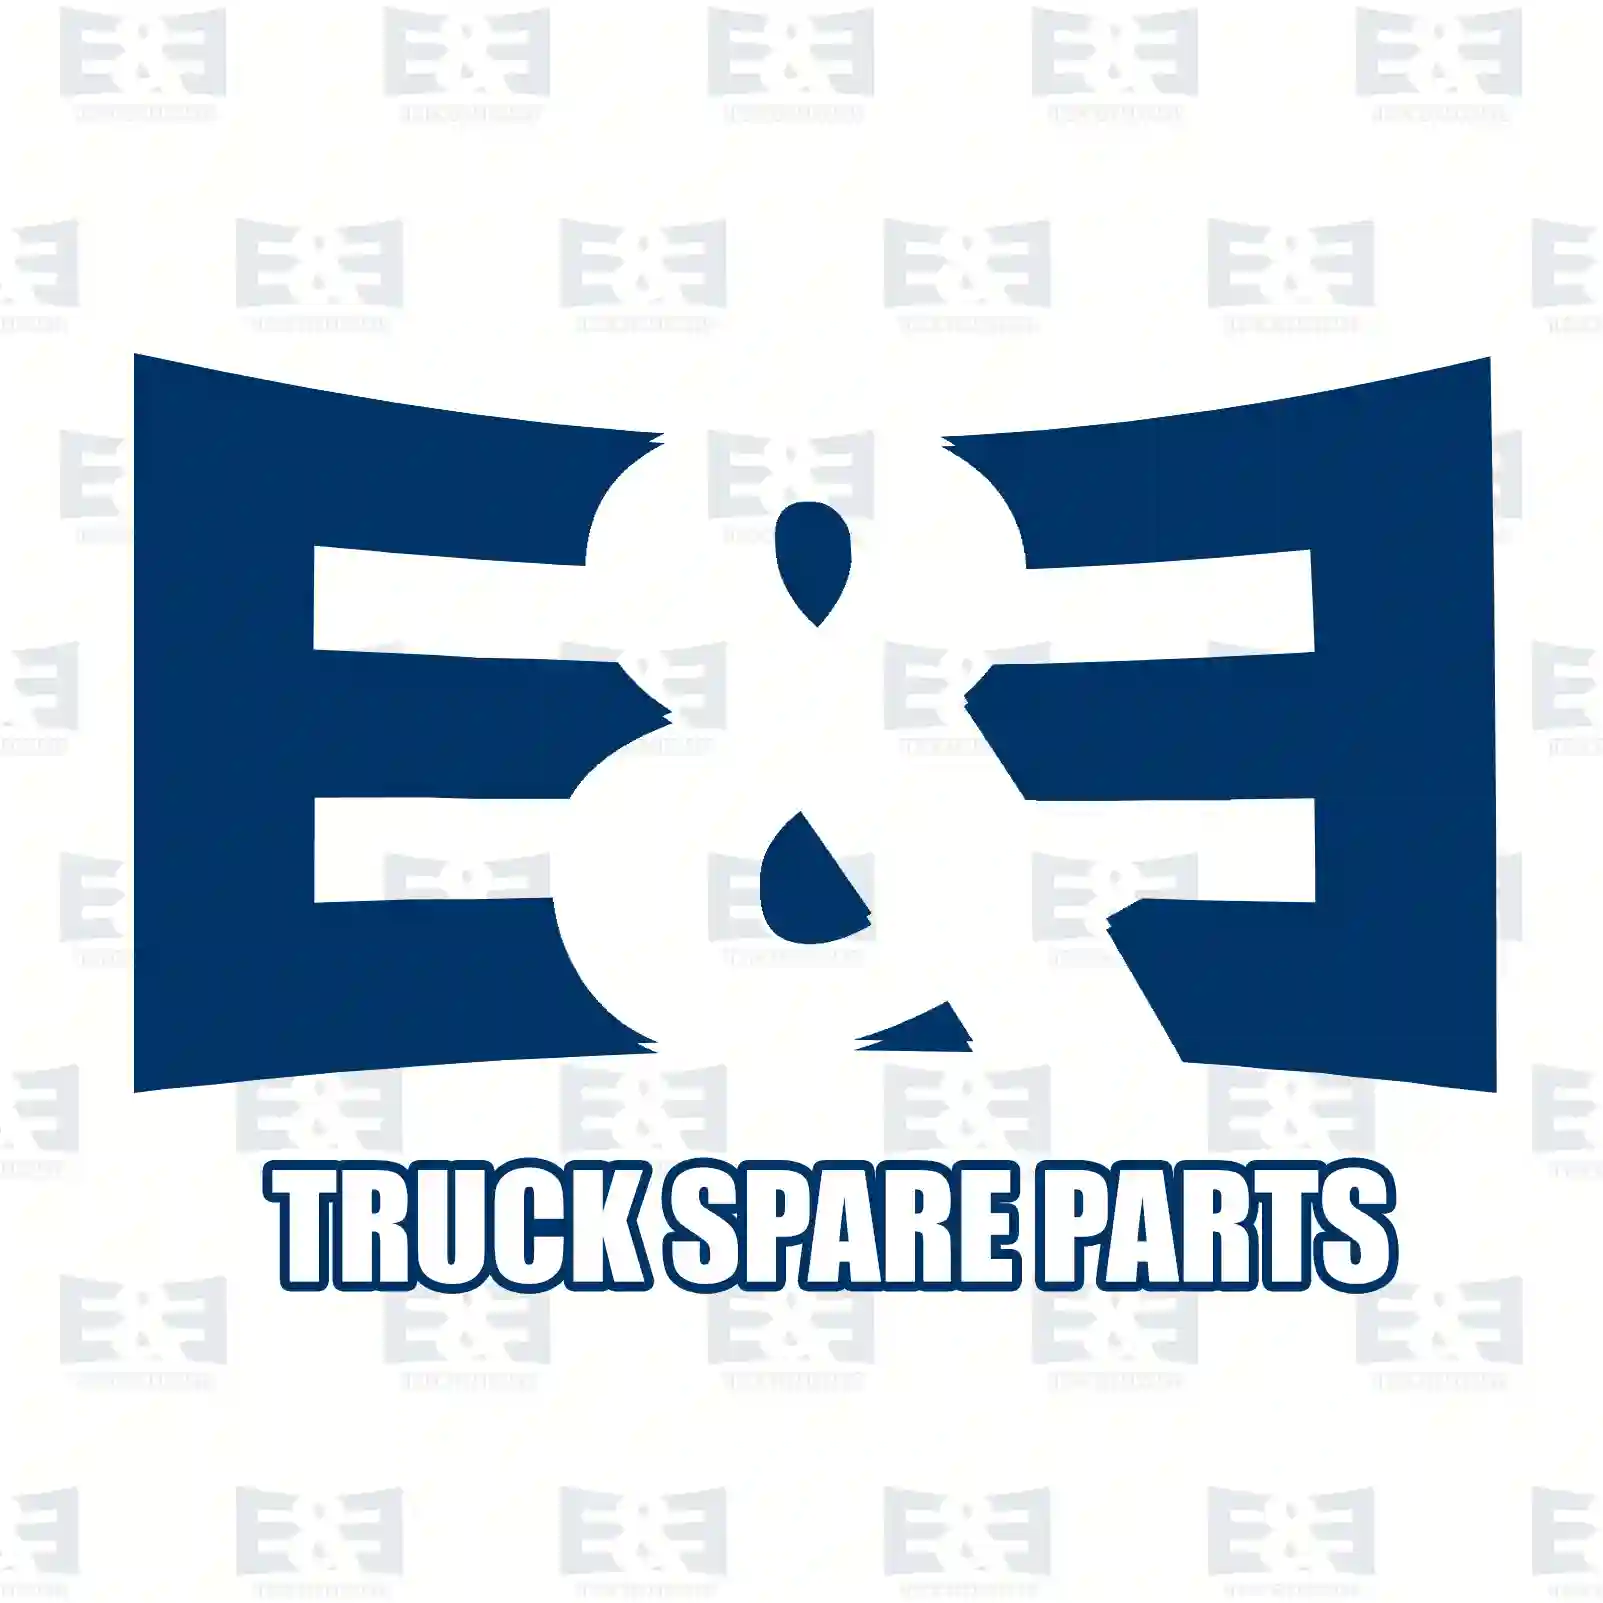  Overhaul kit || E&E Truck Spare Parts | Truck Spare Parts, Auotomotive Spare Parts